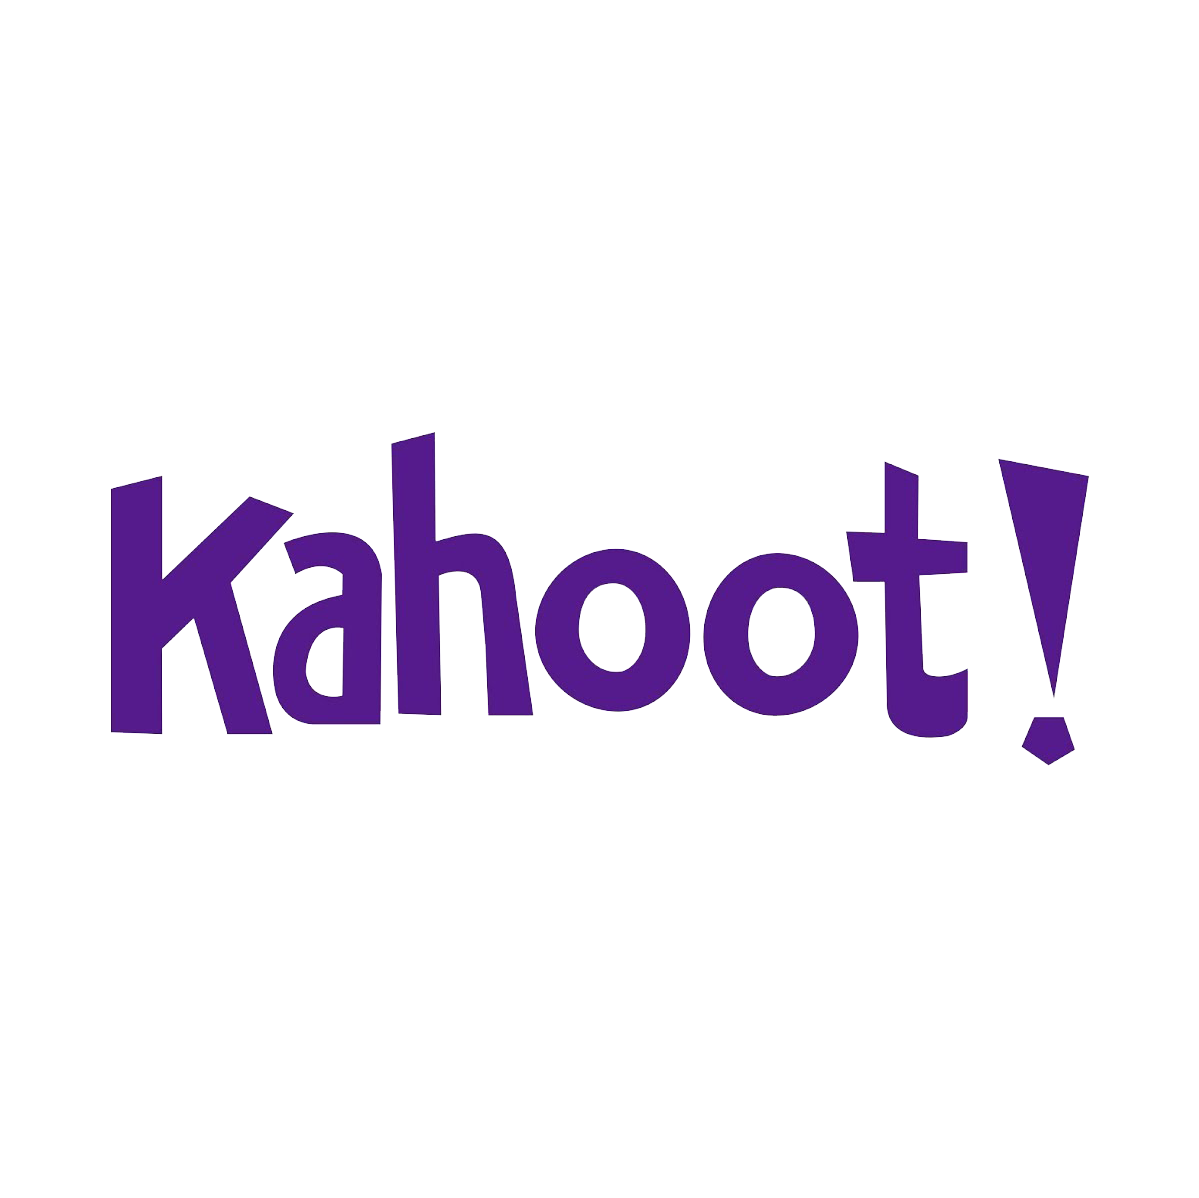 Kahoot